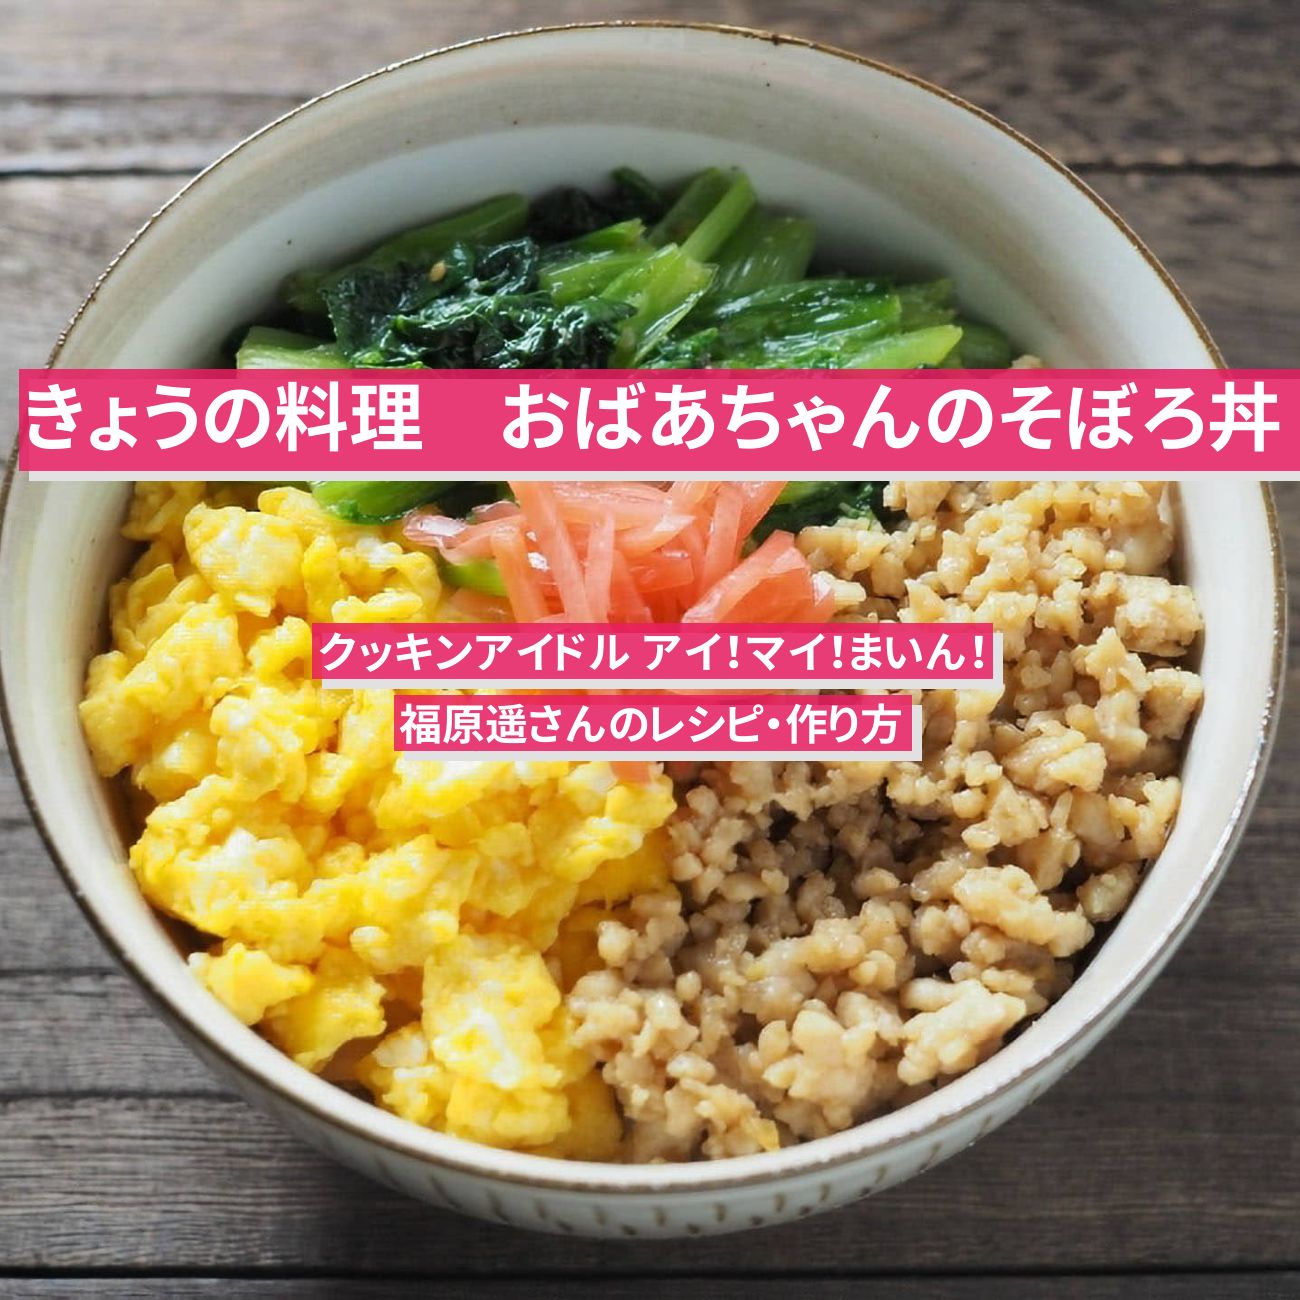 【きょうの料理】『おばあちゃんのそぼろ丼』市瀬悦子さん・福原遥さんのレシピ・作り方